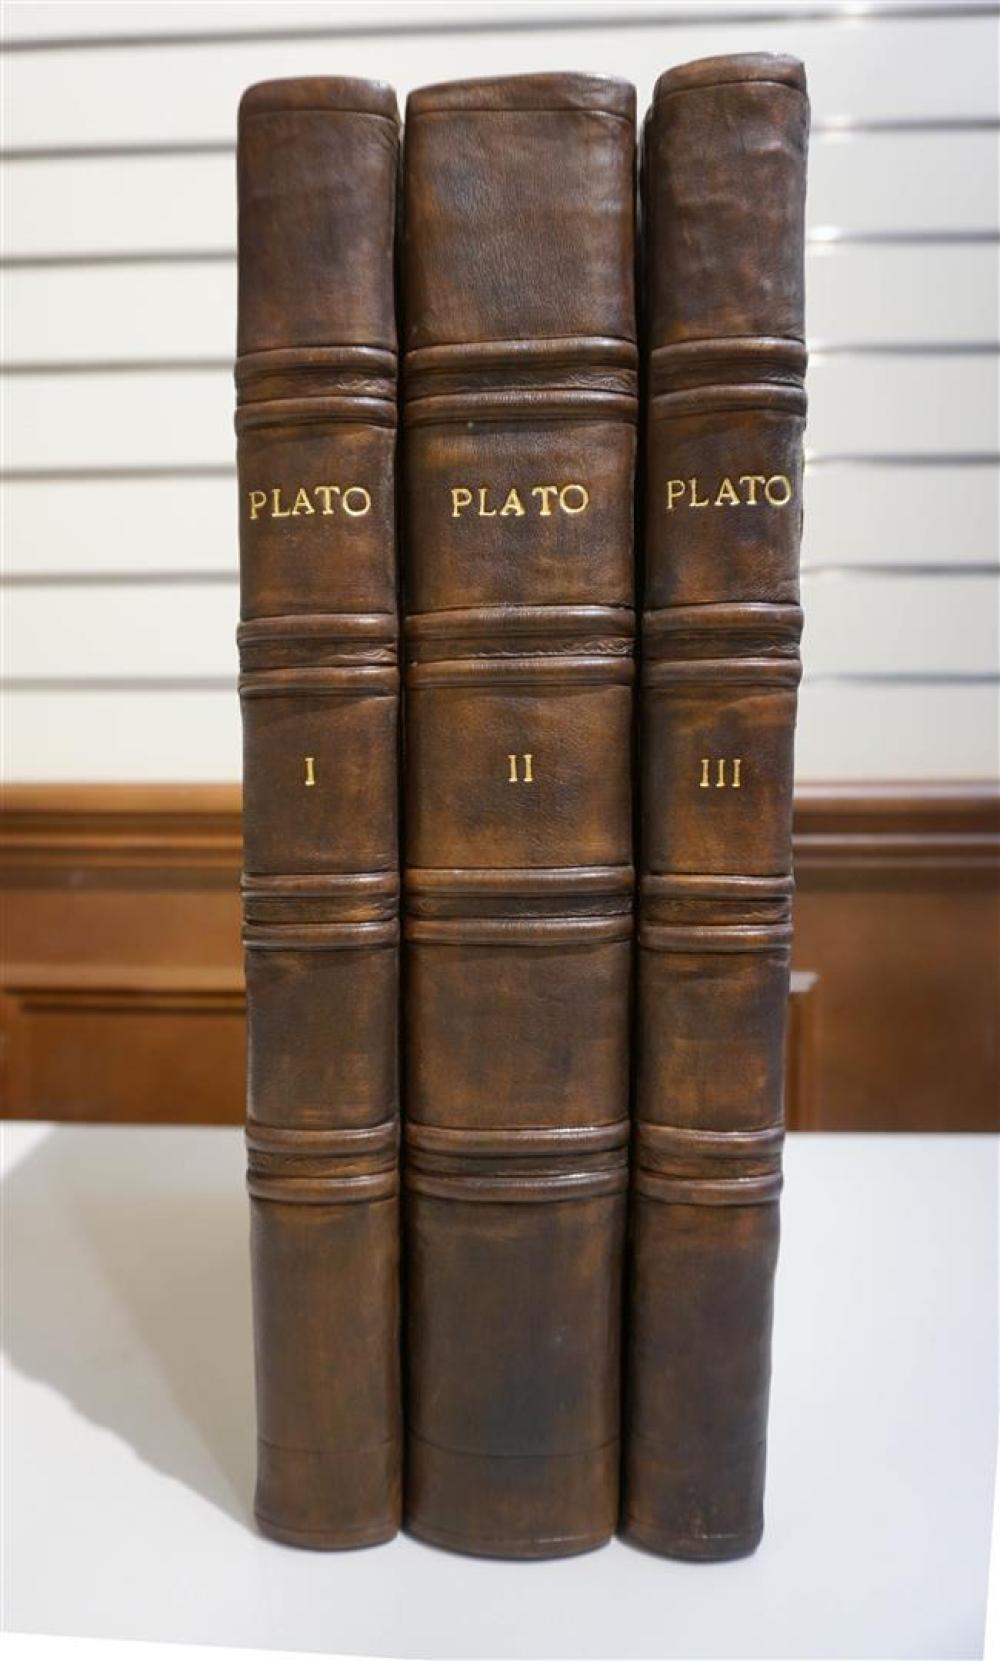 PLATO, THREE VOLUMESPlato, Three